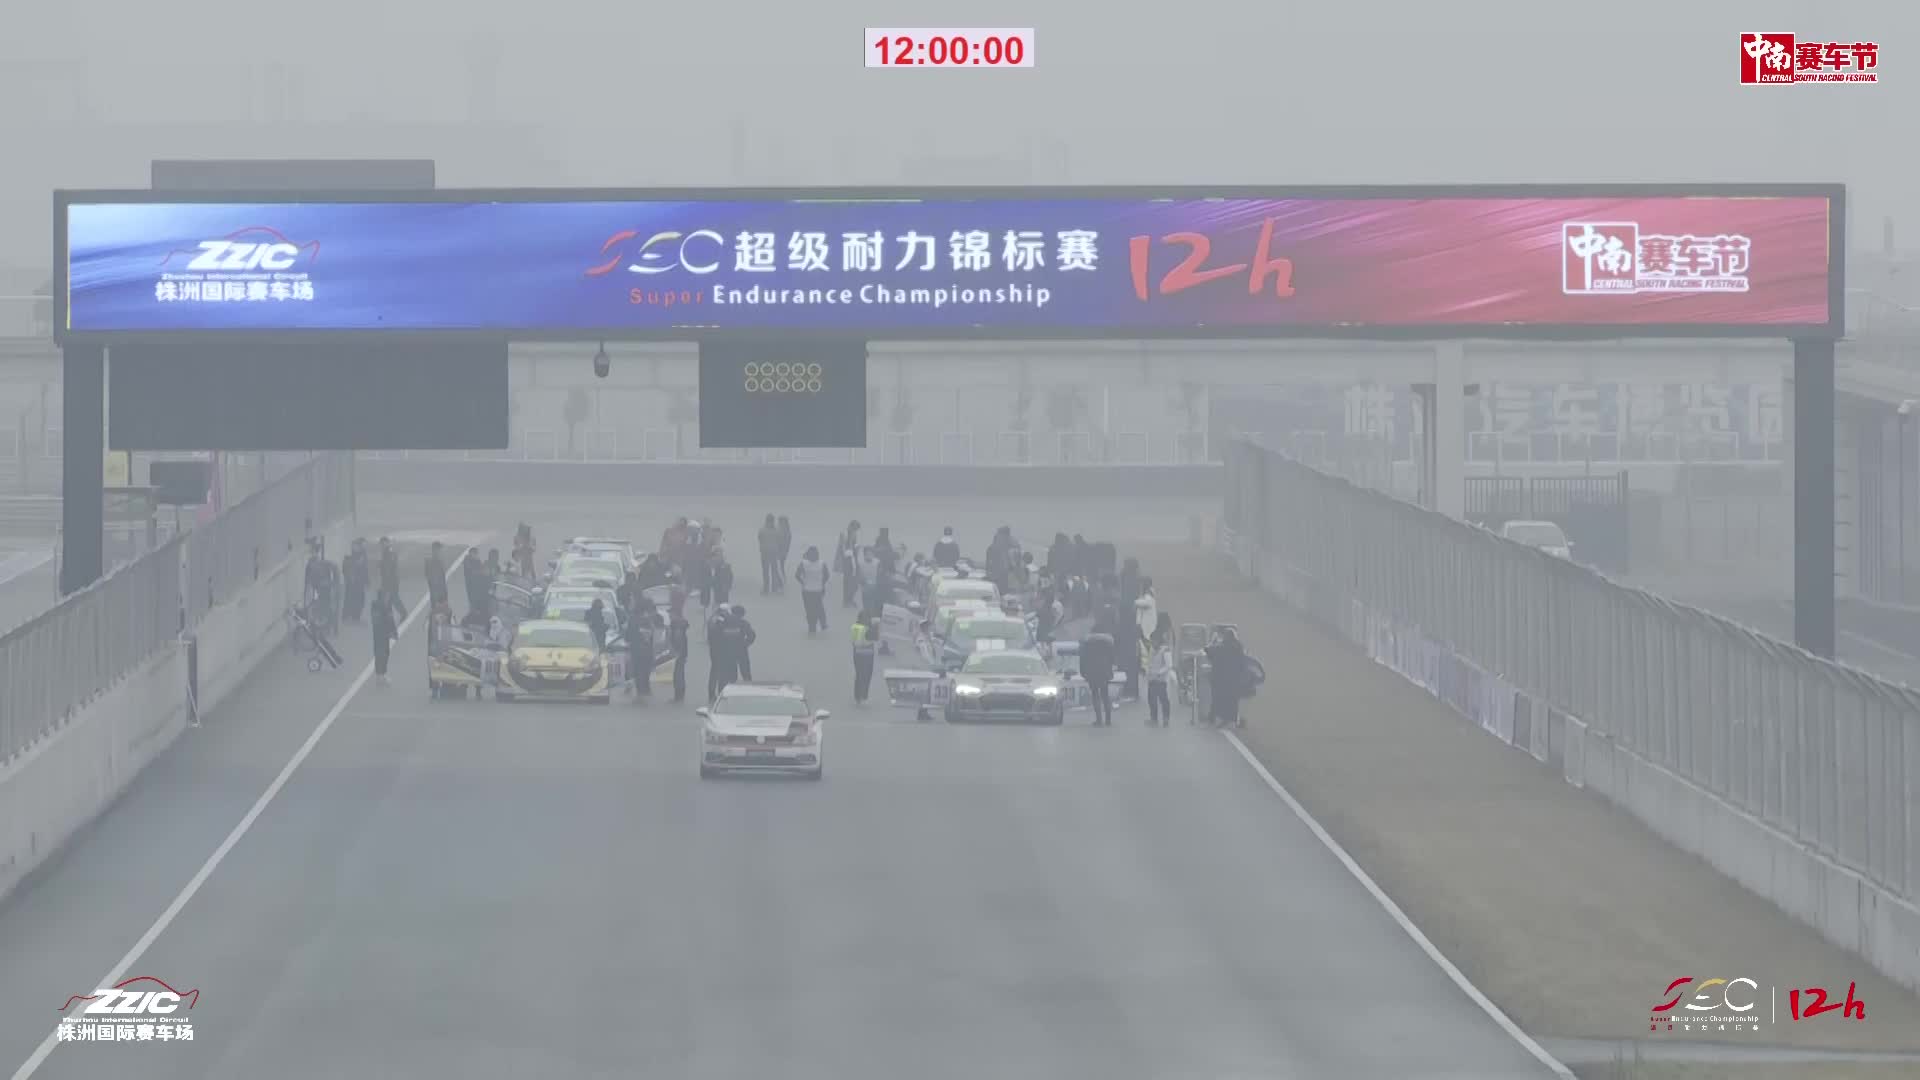 [直播]中南赛车节·SEC12小时超级耐力锦标赛 1.9 01